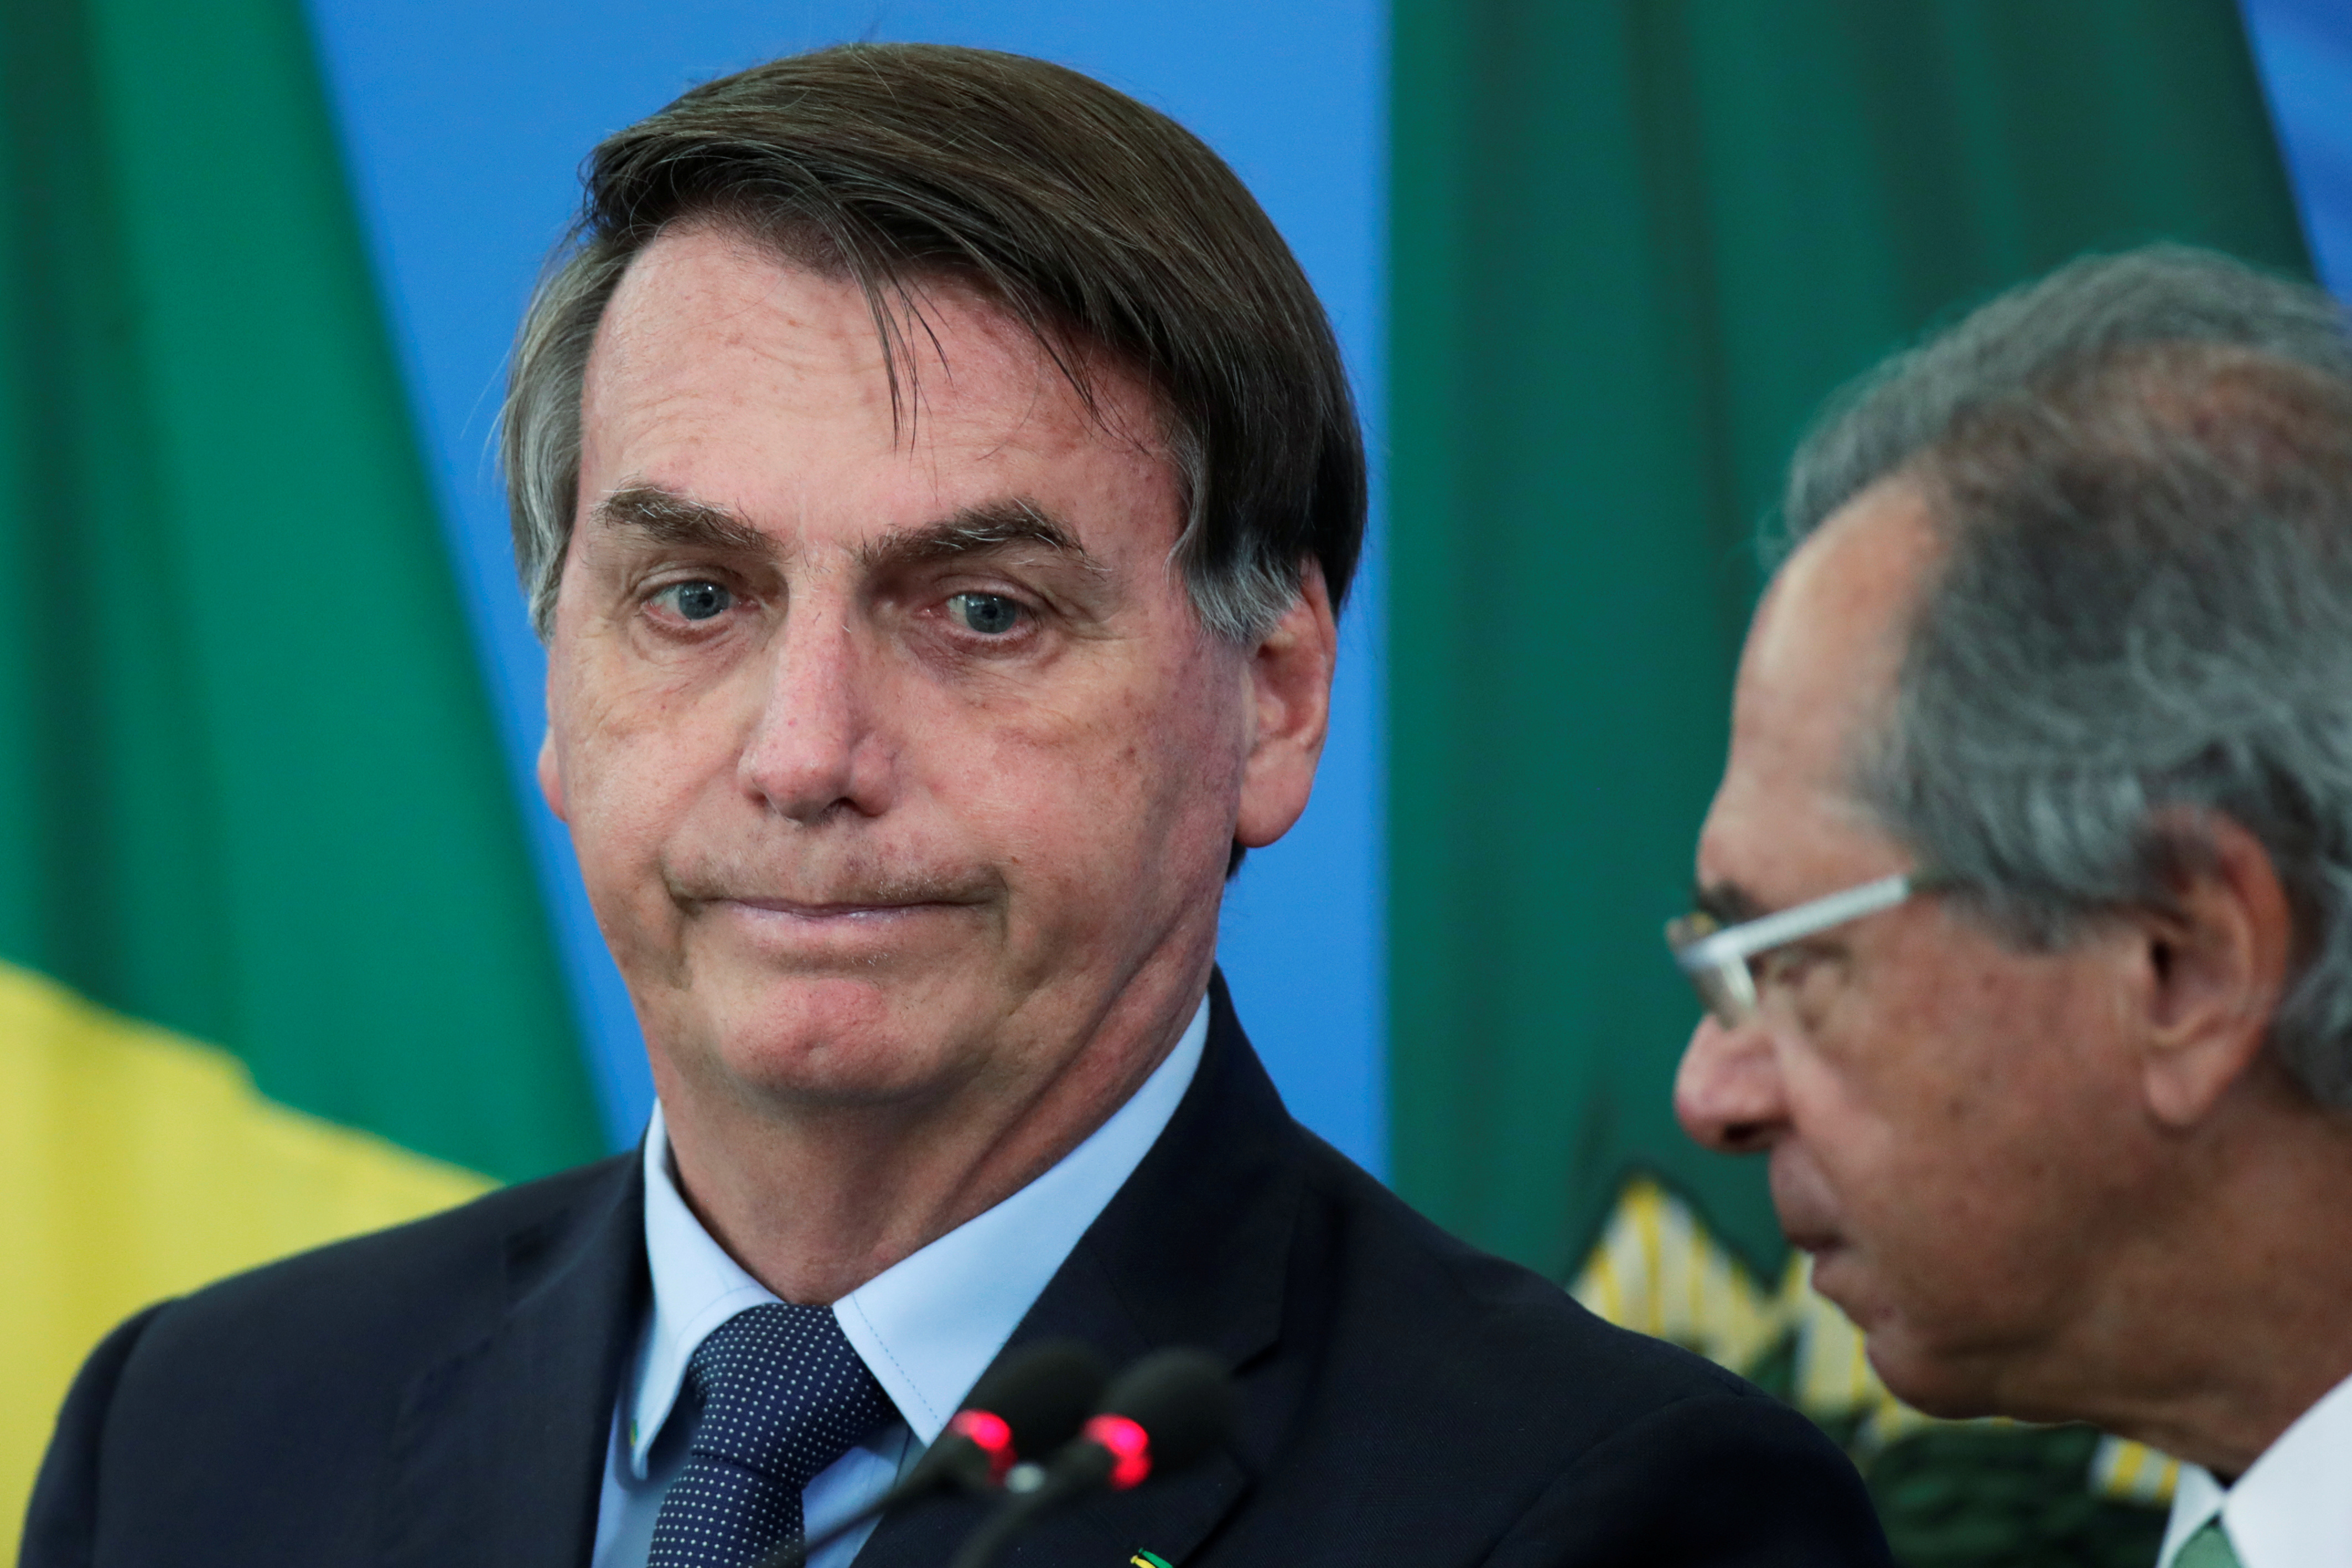 Bolsonaro cambia de tono y admite que el coronavirus es “el mayor desafío de nuestra generación”